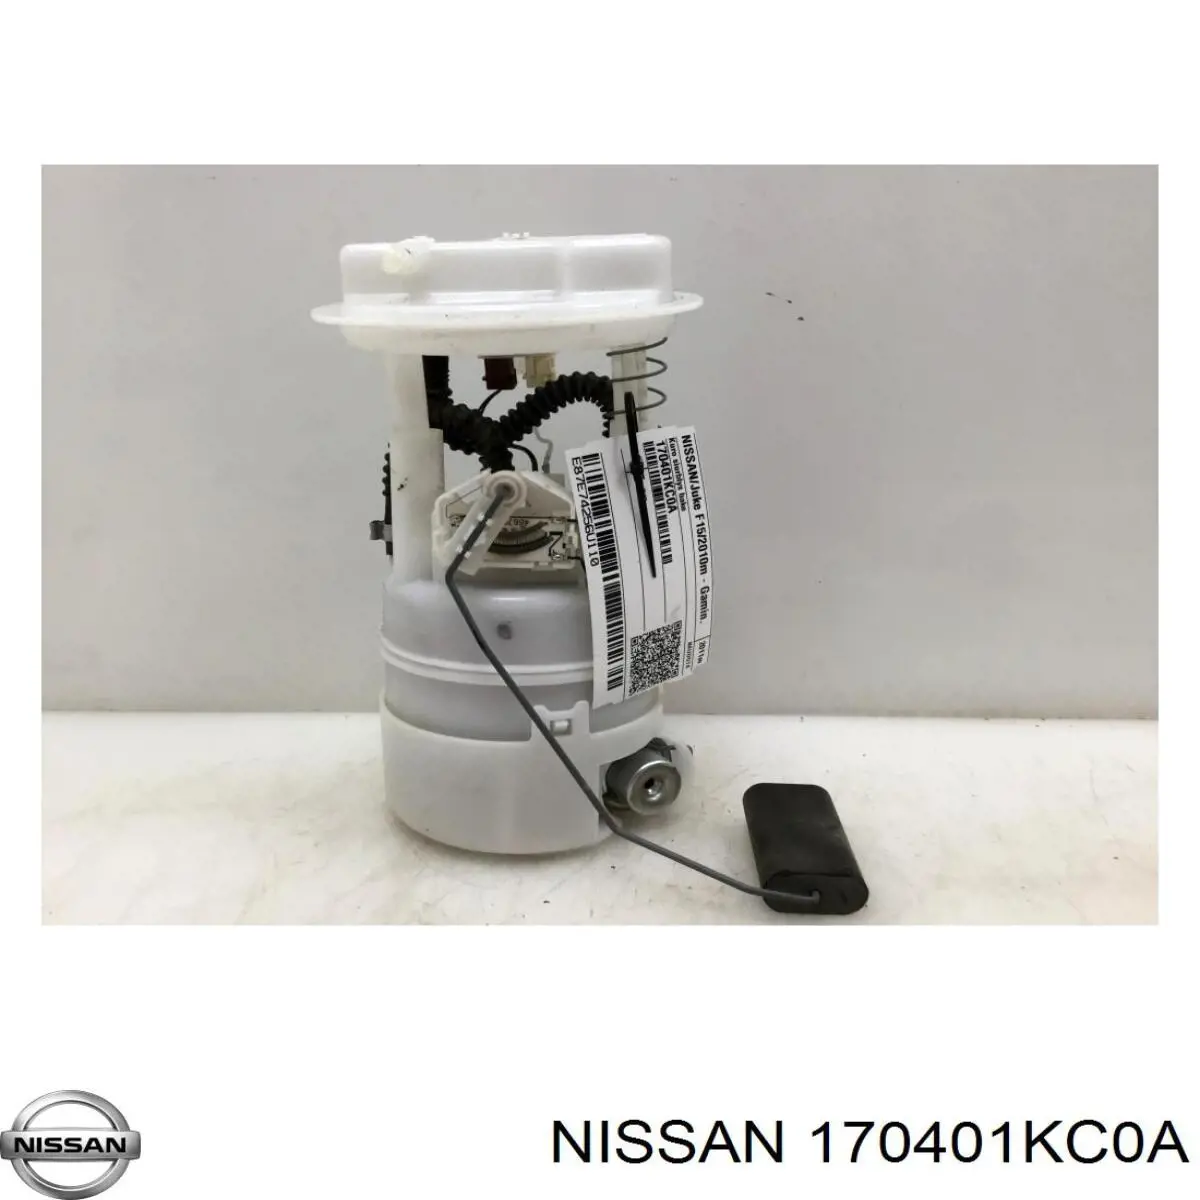 170401KC0A Nissan regulador de pressão de combustível de módulo da bomba de combustível no tanque